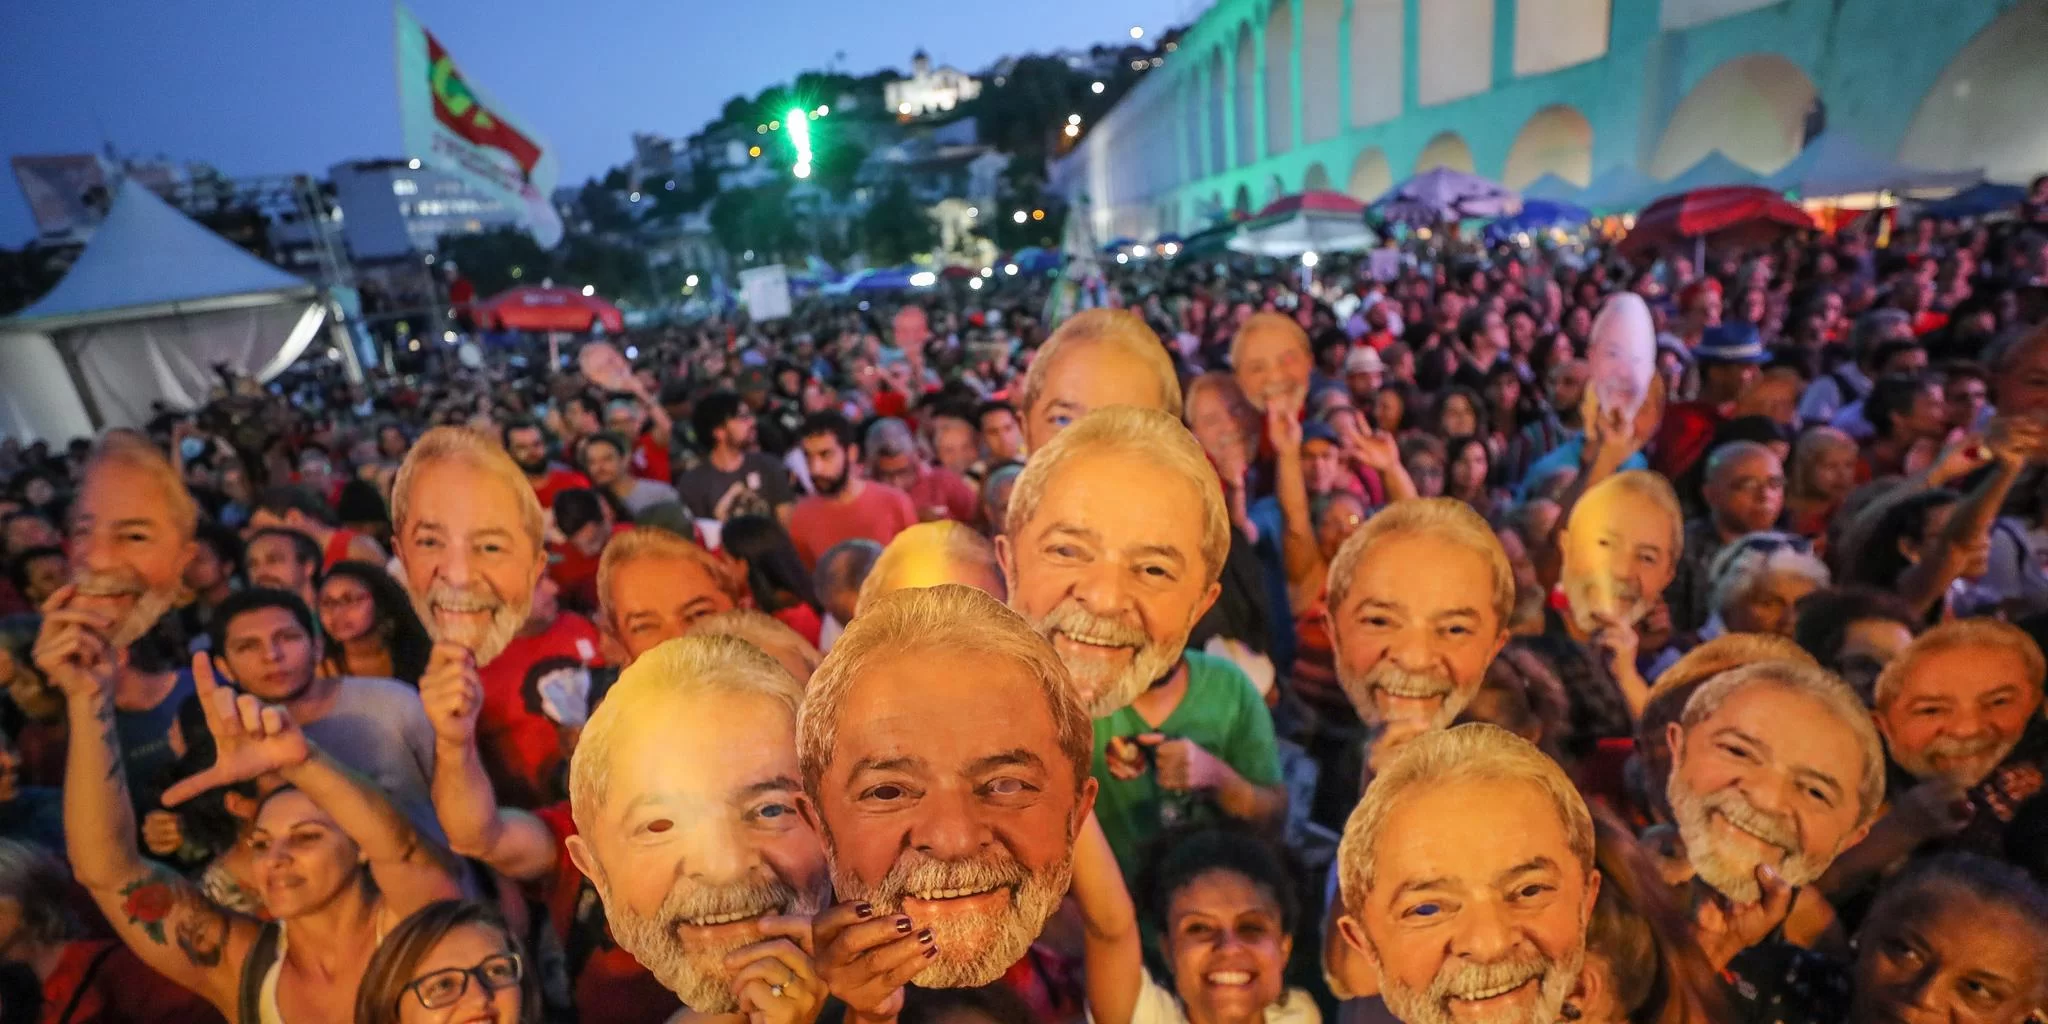 Em comício, pessoas posam com máscaras de Lula